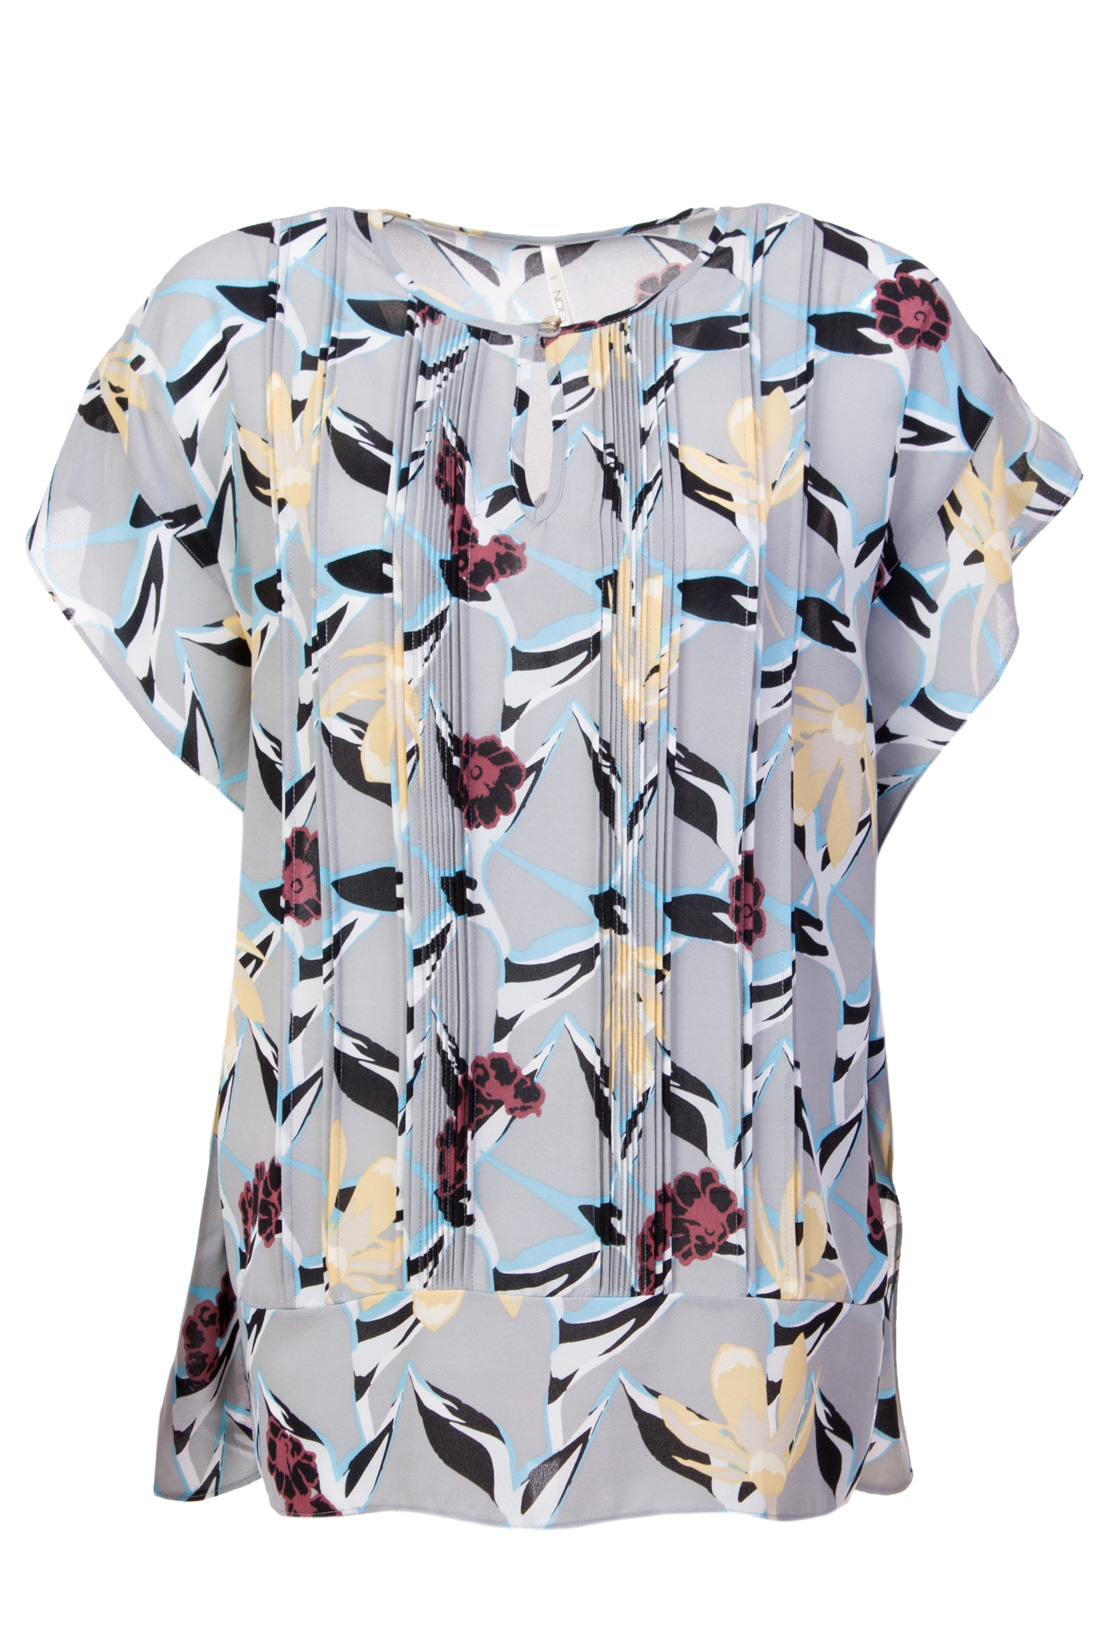 Блузка свободного кроя с цветочным узором (арт. baon B197002), размер XS Блузка свободного кроя с цветочным узором (арт. baon B197002) - фото 4